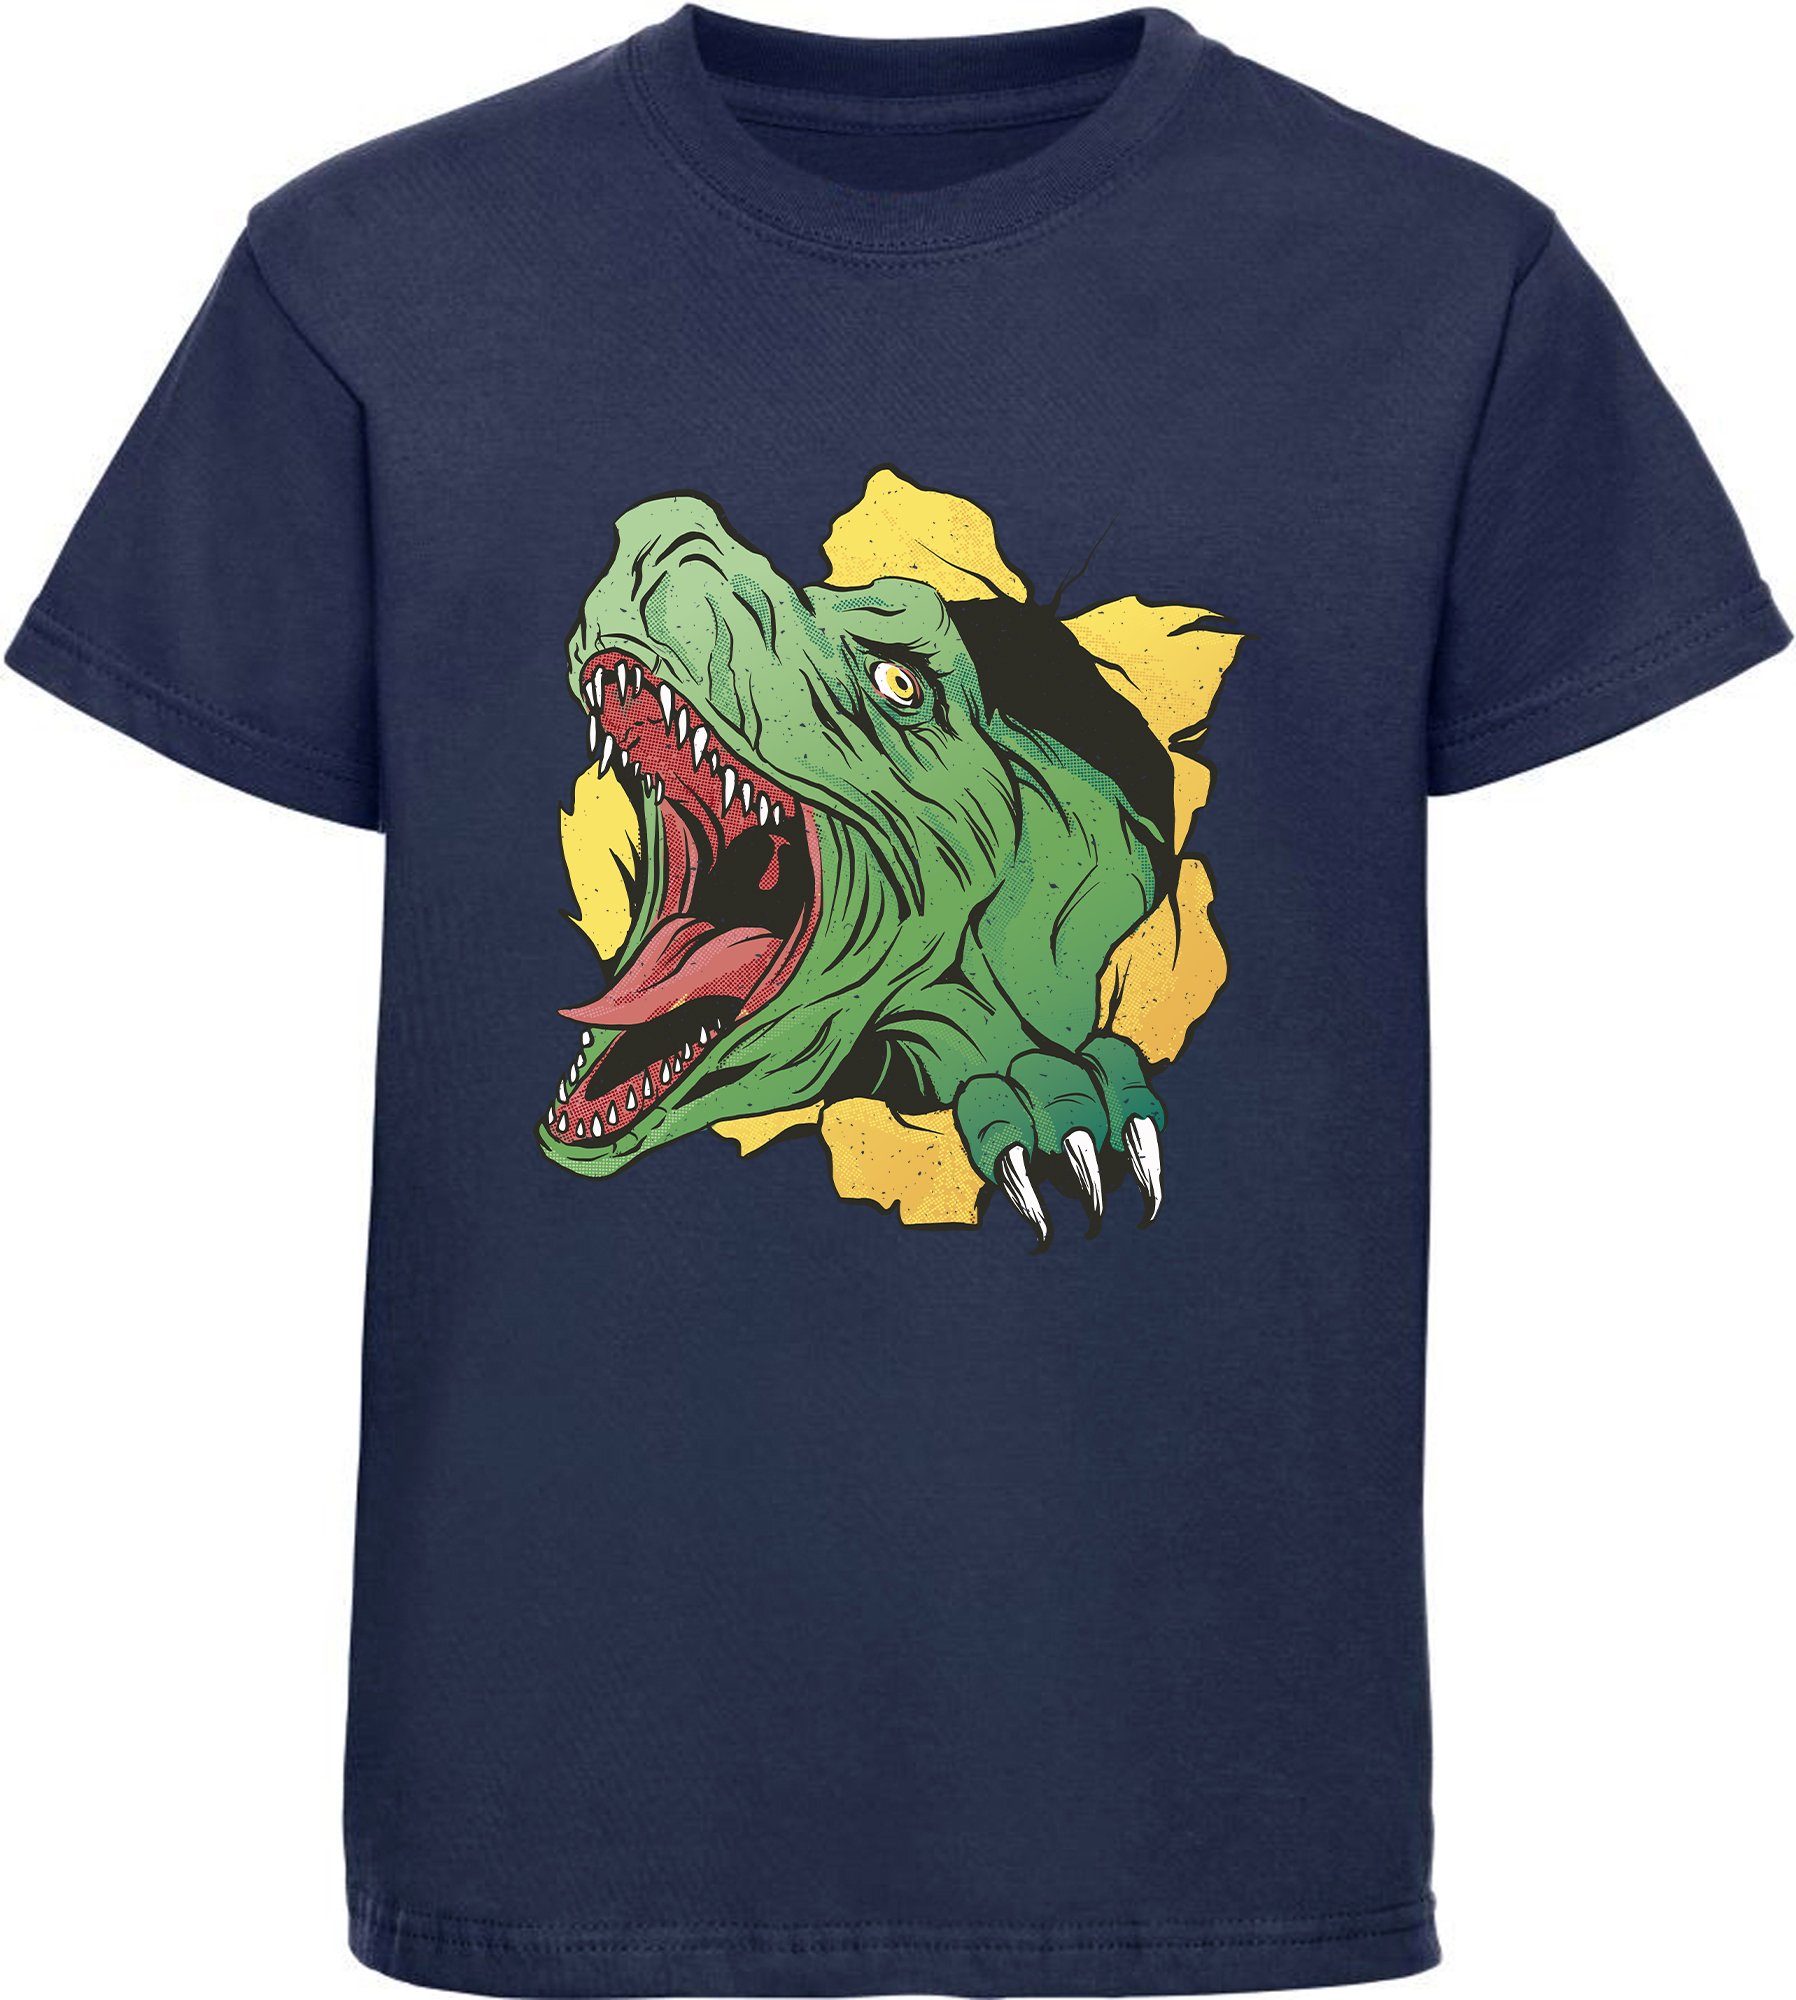 Kinder Baumwollshirt navy T-Rex weiß, i68 blau bedrucktes blau, rot, Dino, Kopf T-Shirt schwarz, MyDesign24 mit mit Print-Shirt